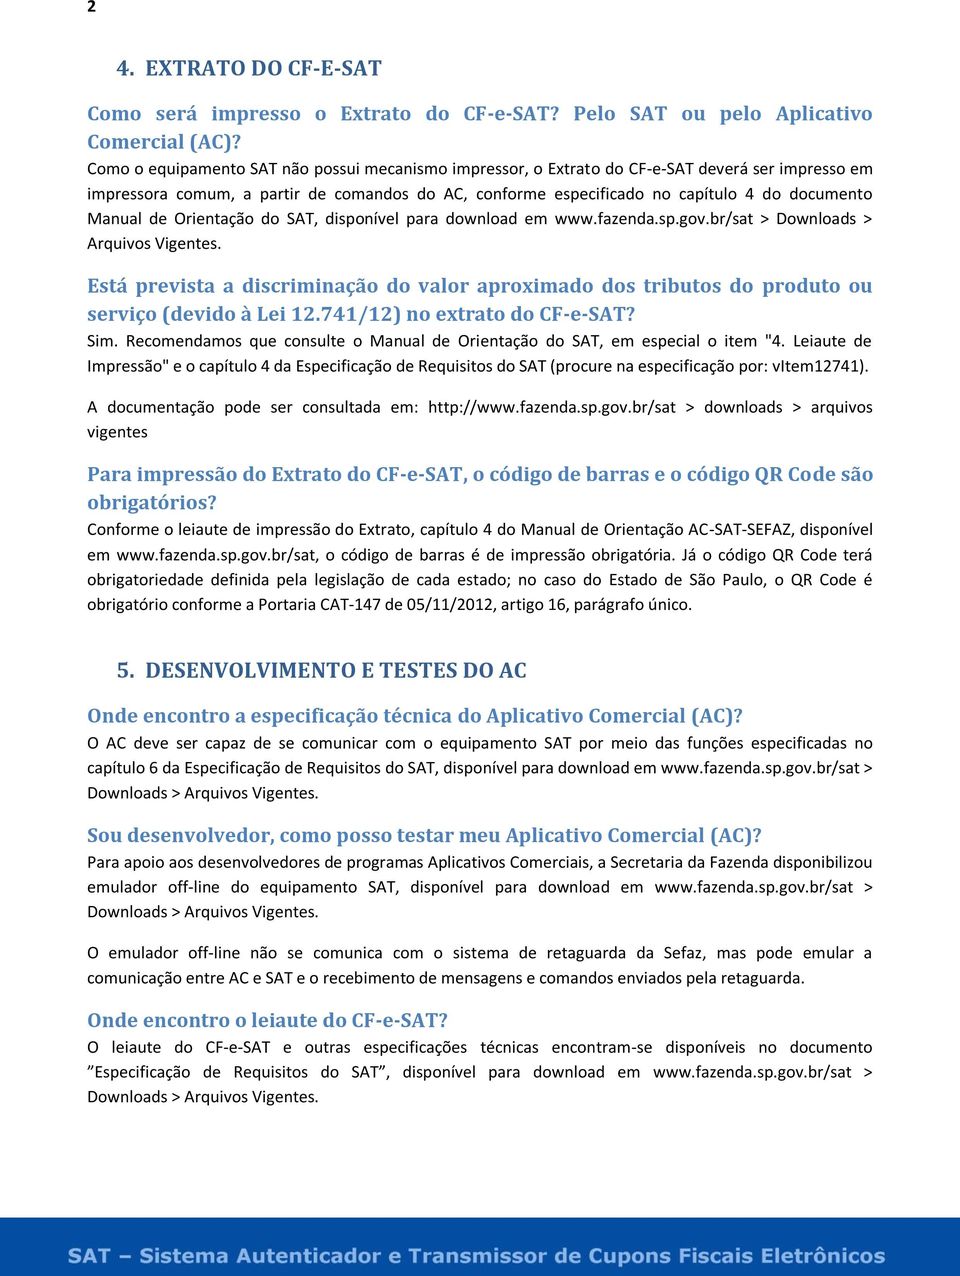 Manual de Orientação do SAT, disponível para download em www.fazenda.sp.gov.br/sat > Downloads > Arquivos Vigentes.